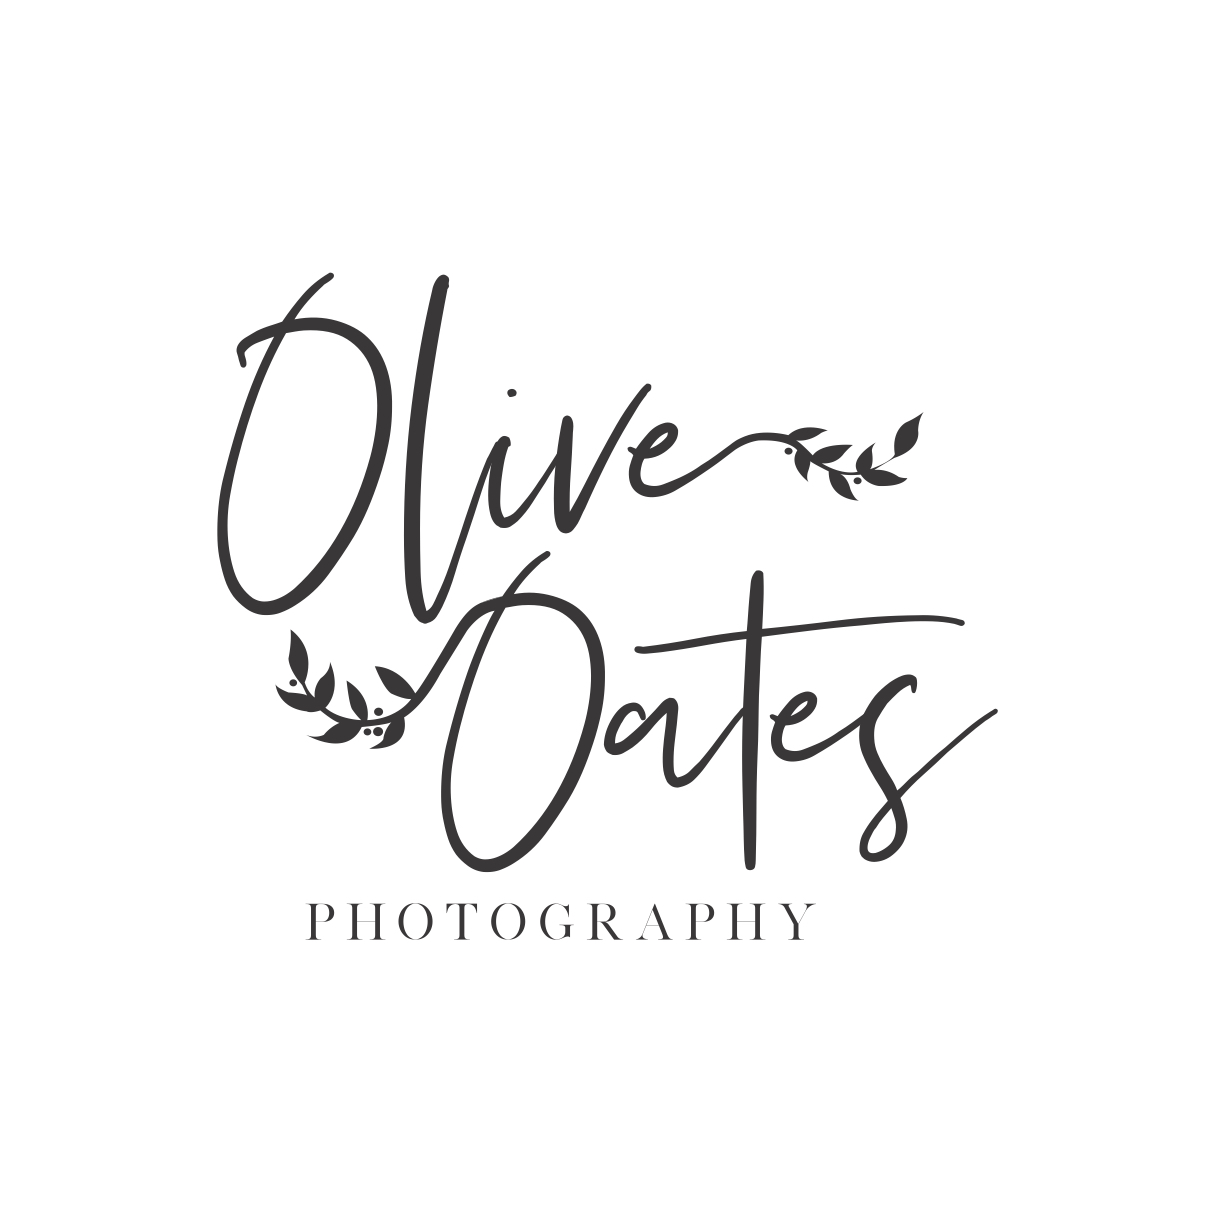 Olive Oates Photography